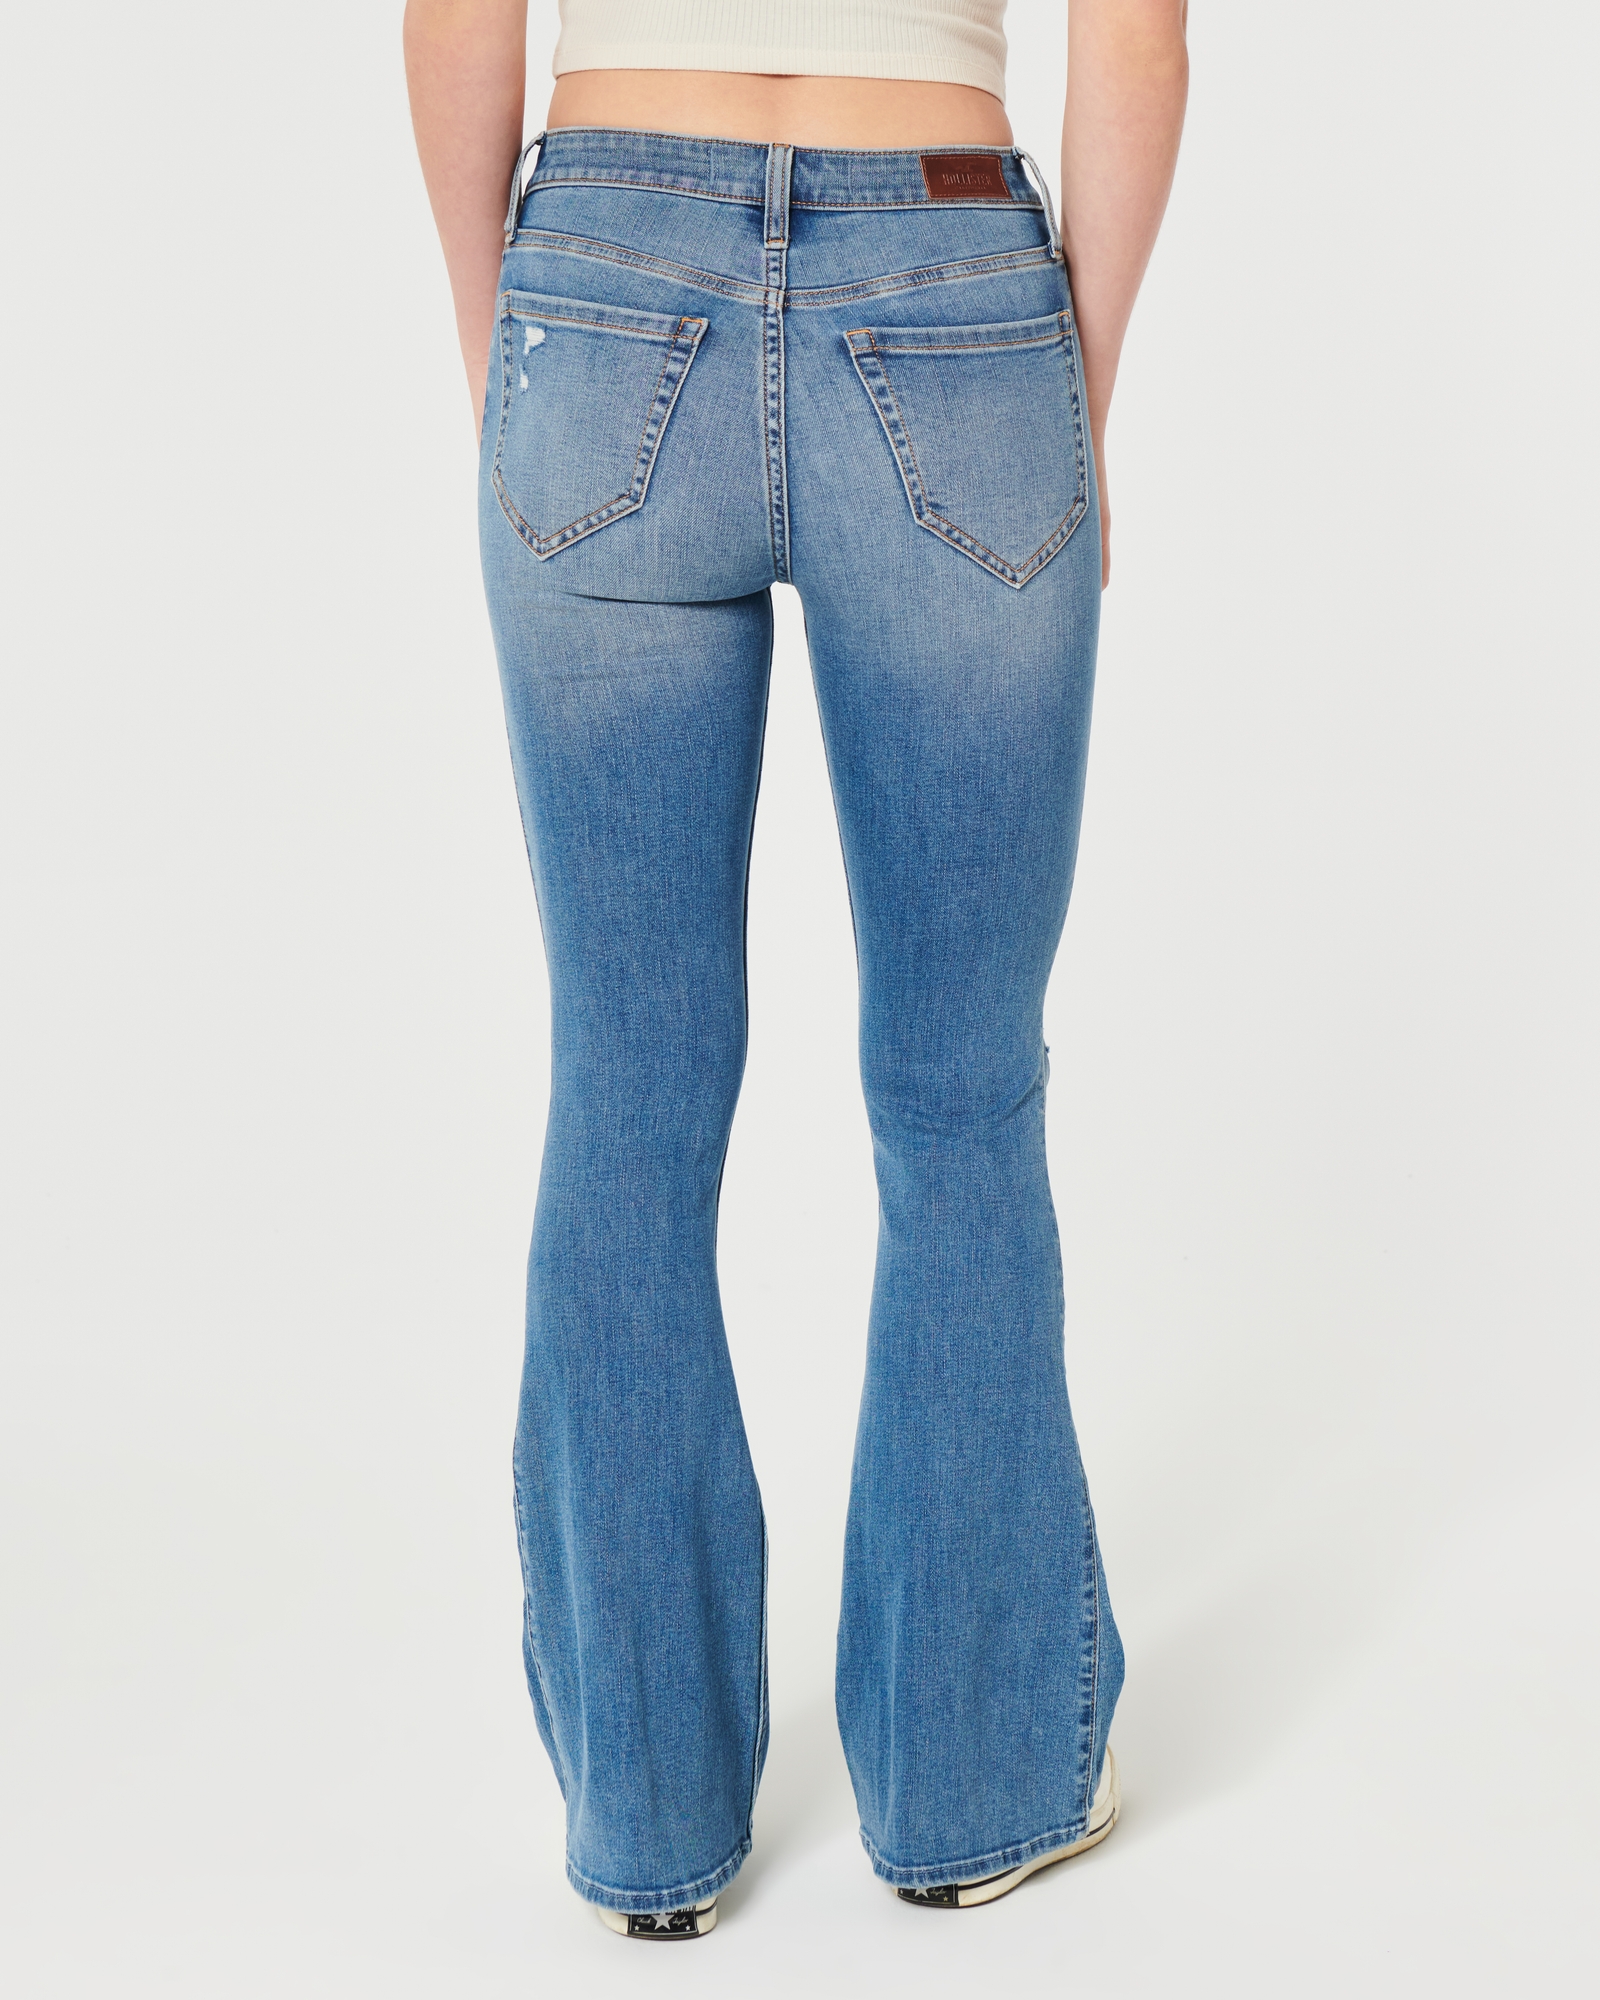 Hollister California Womens 9R (29)Inseam 33”Cali Flare Jeans Blue Stretch  Denim